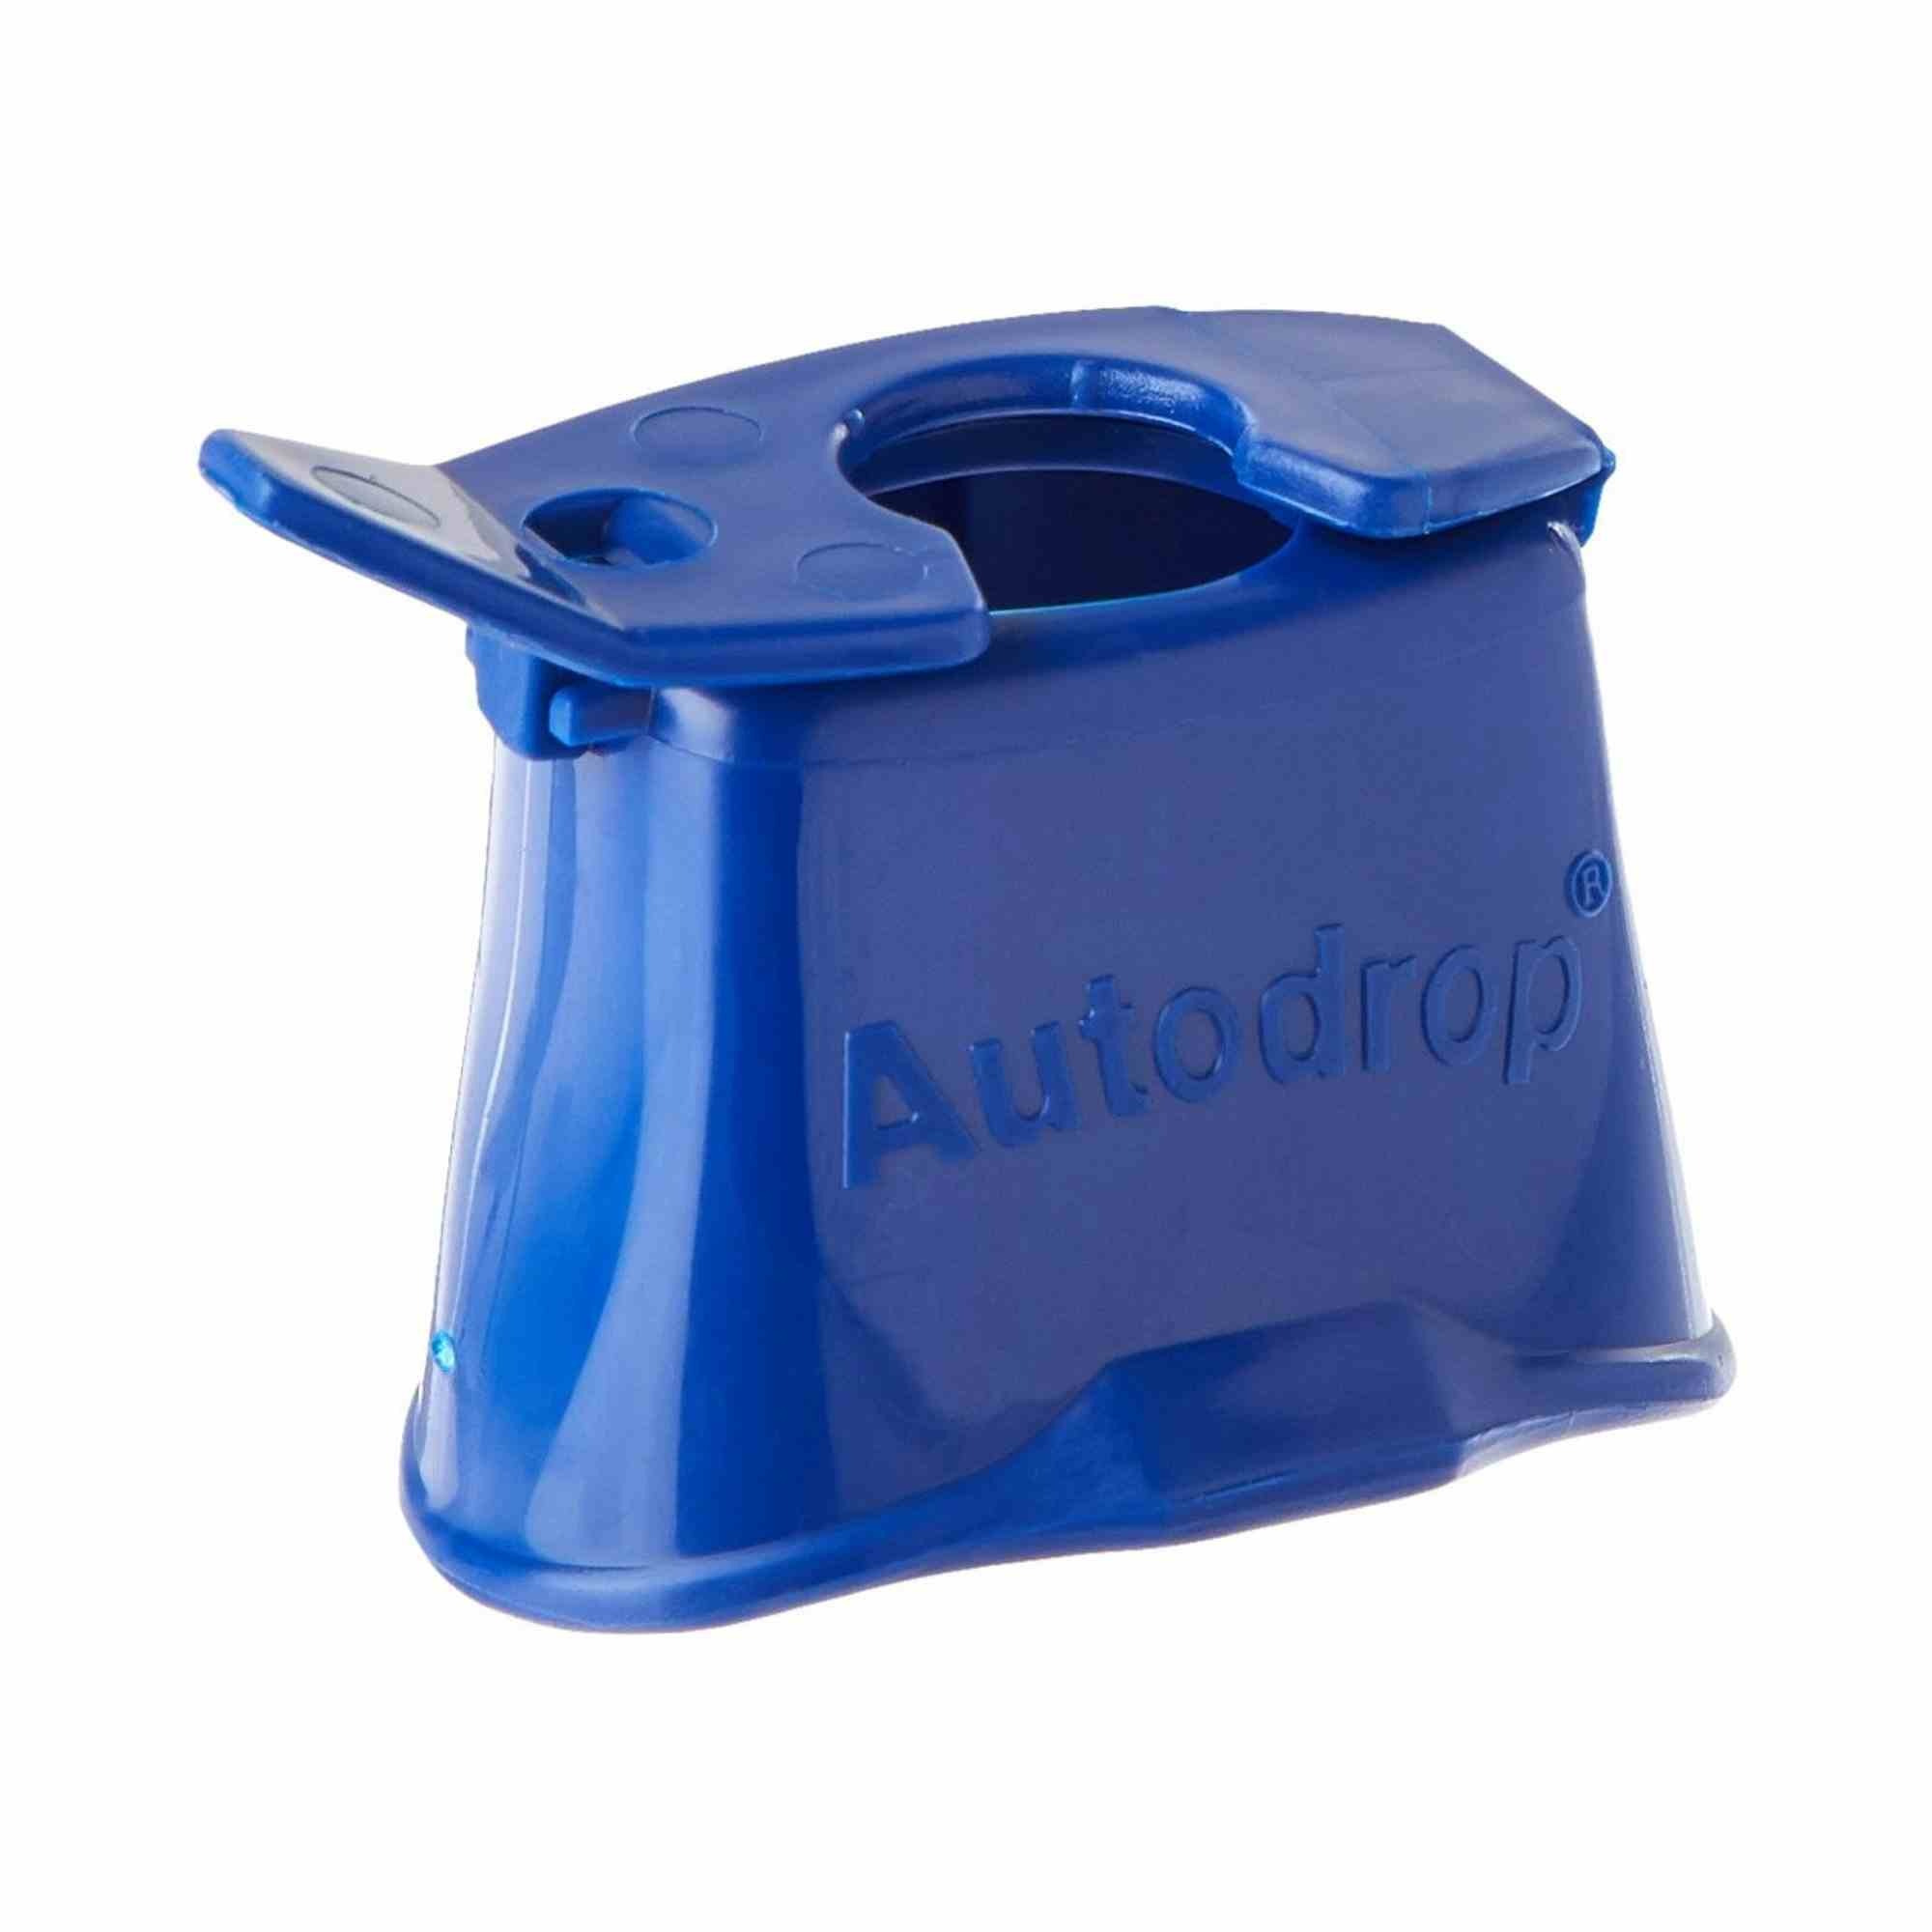 Autodrop Eye Drop Guide, 786770000, 1 Each